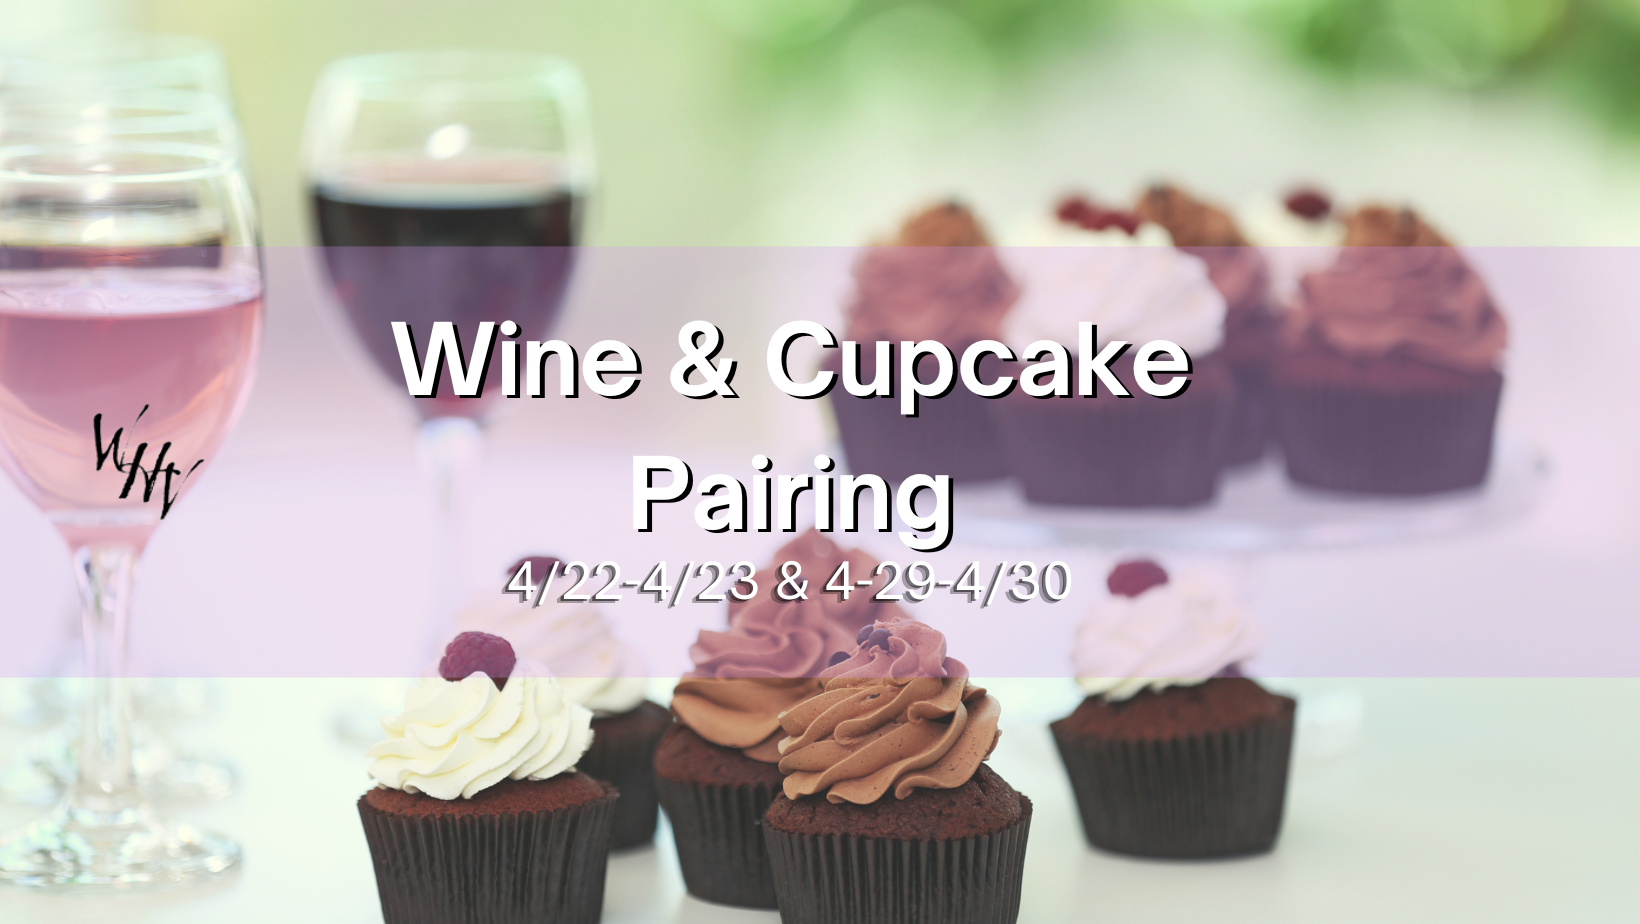 Wine & Cupcake Pairing